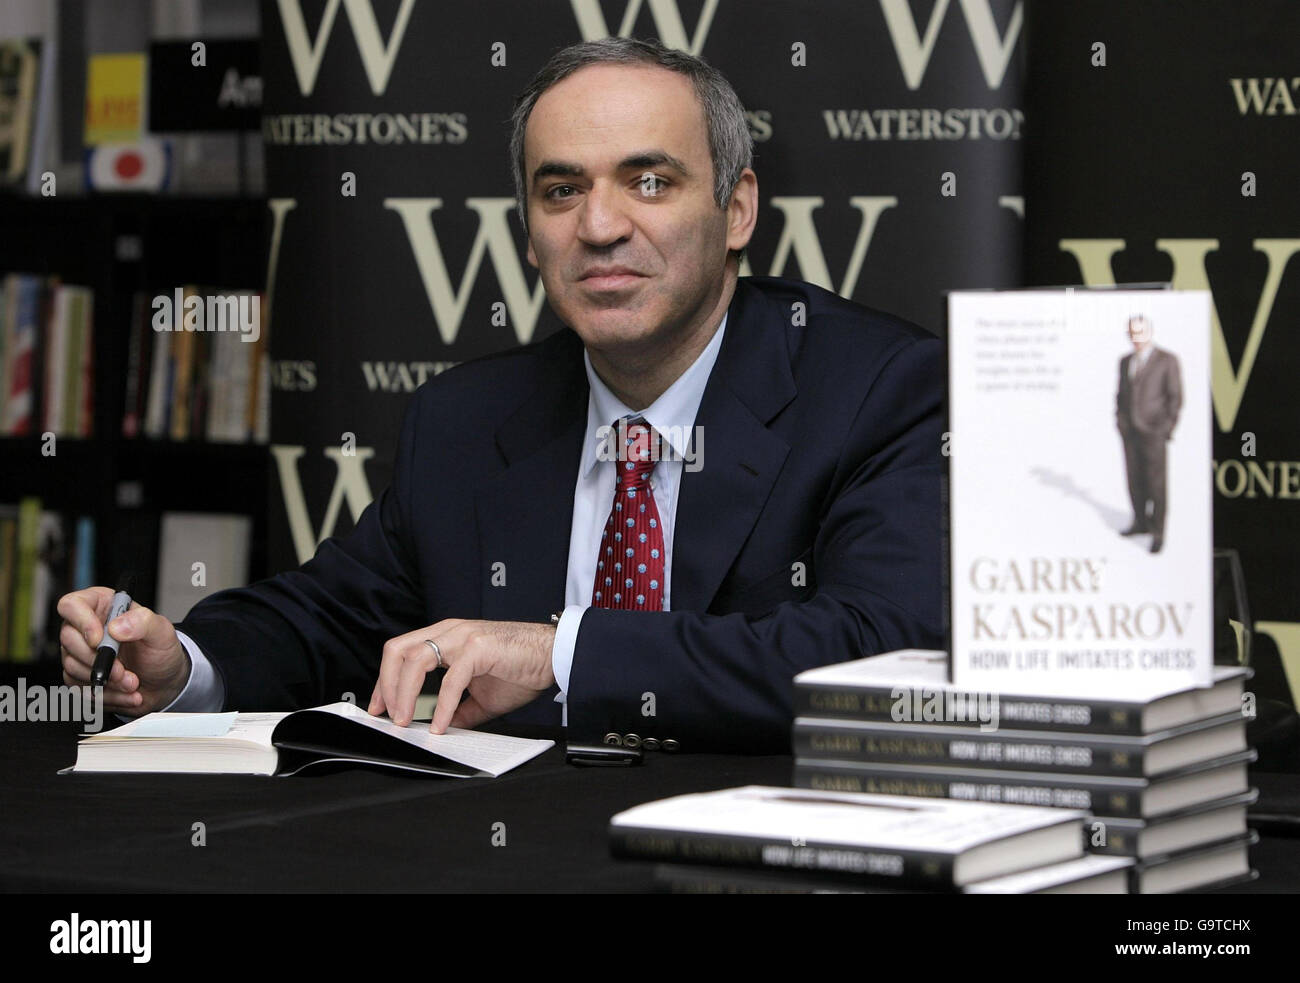 Livro Cómo La Vida Imita Al Ajedrez de Garry Kasparov (Espanhol)